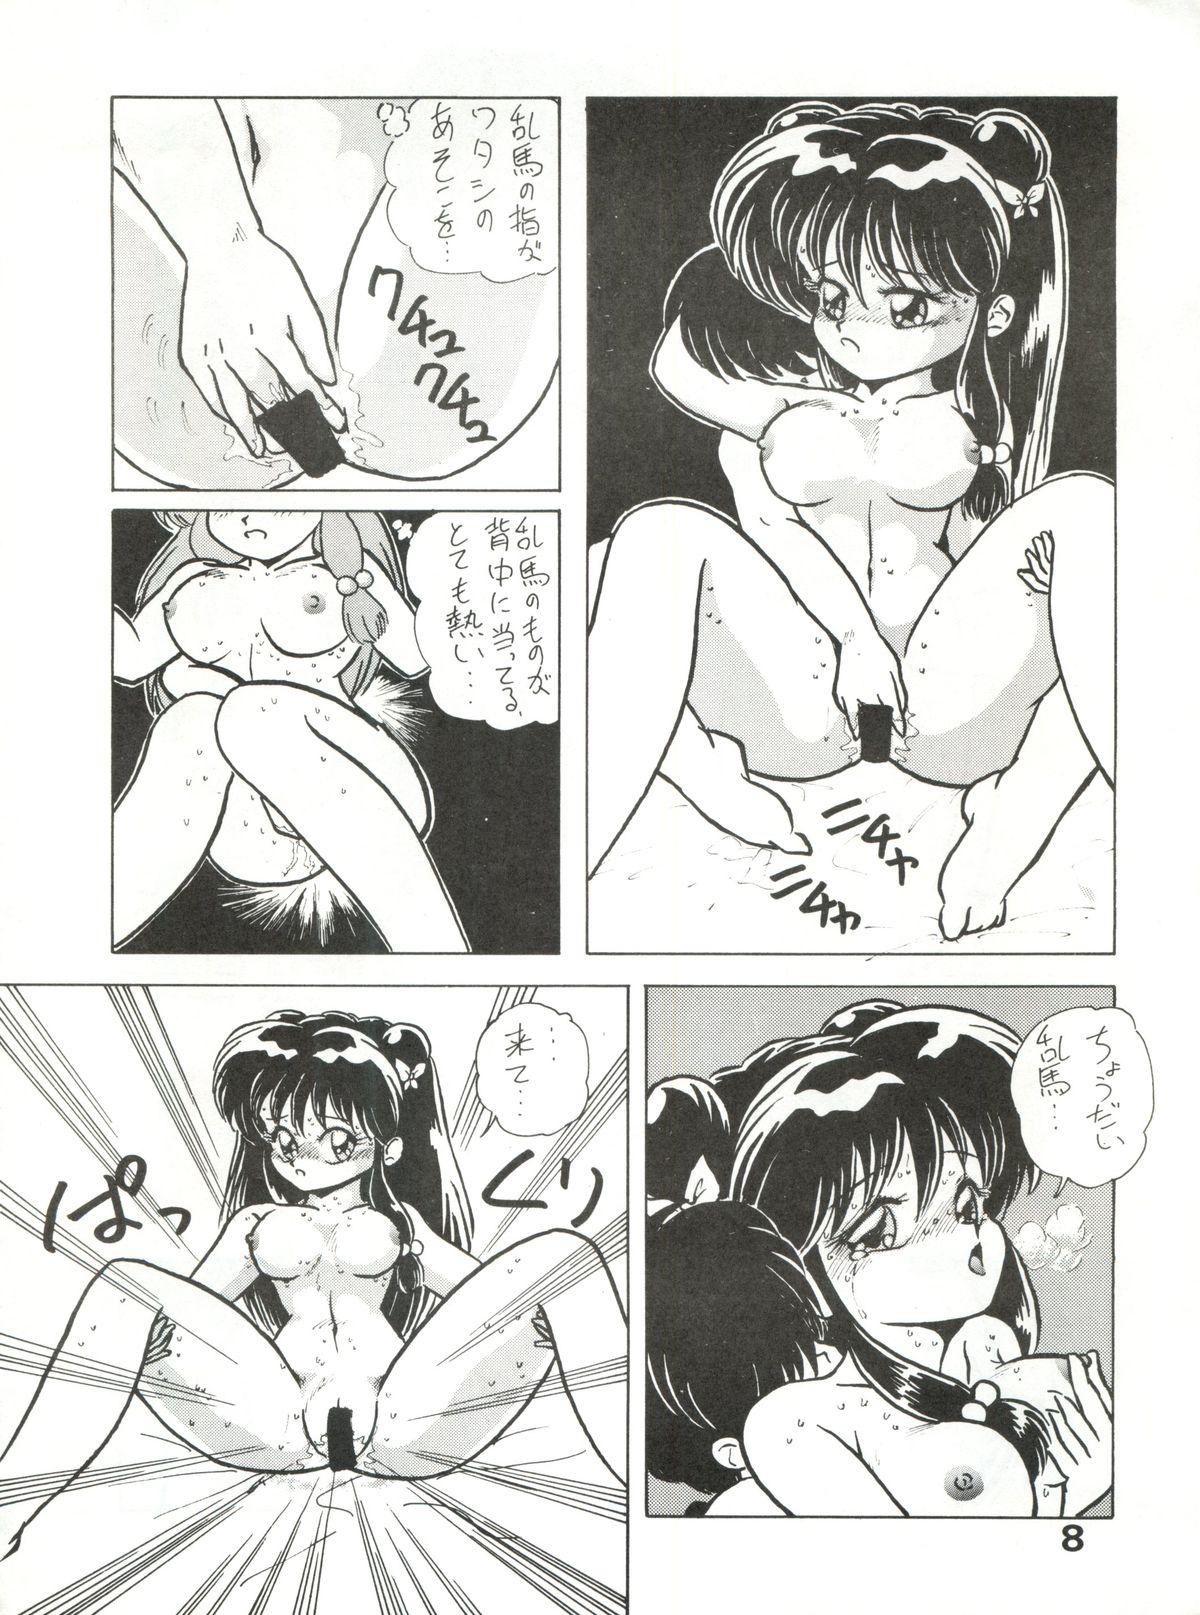 Softcore Zubizu Bat - Sailor moon Ranma 12 3x3 eyes Shower - Page 8